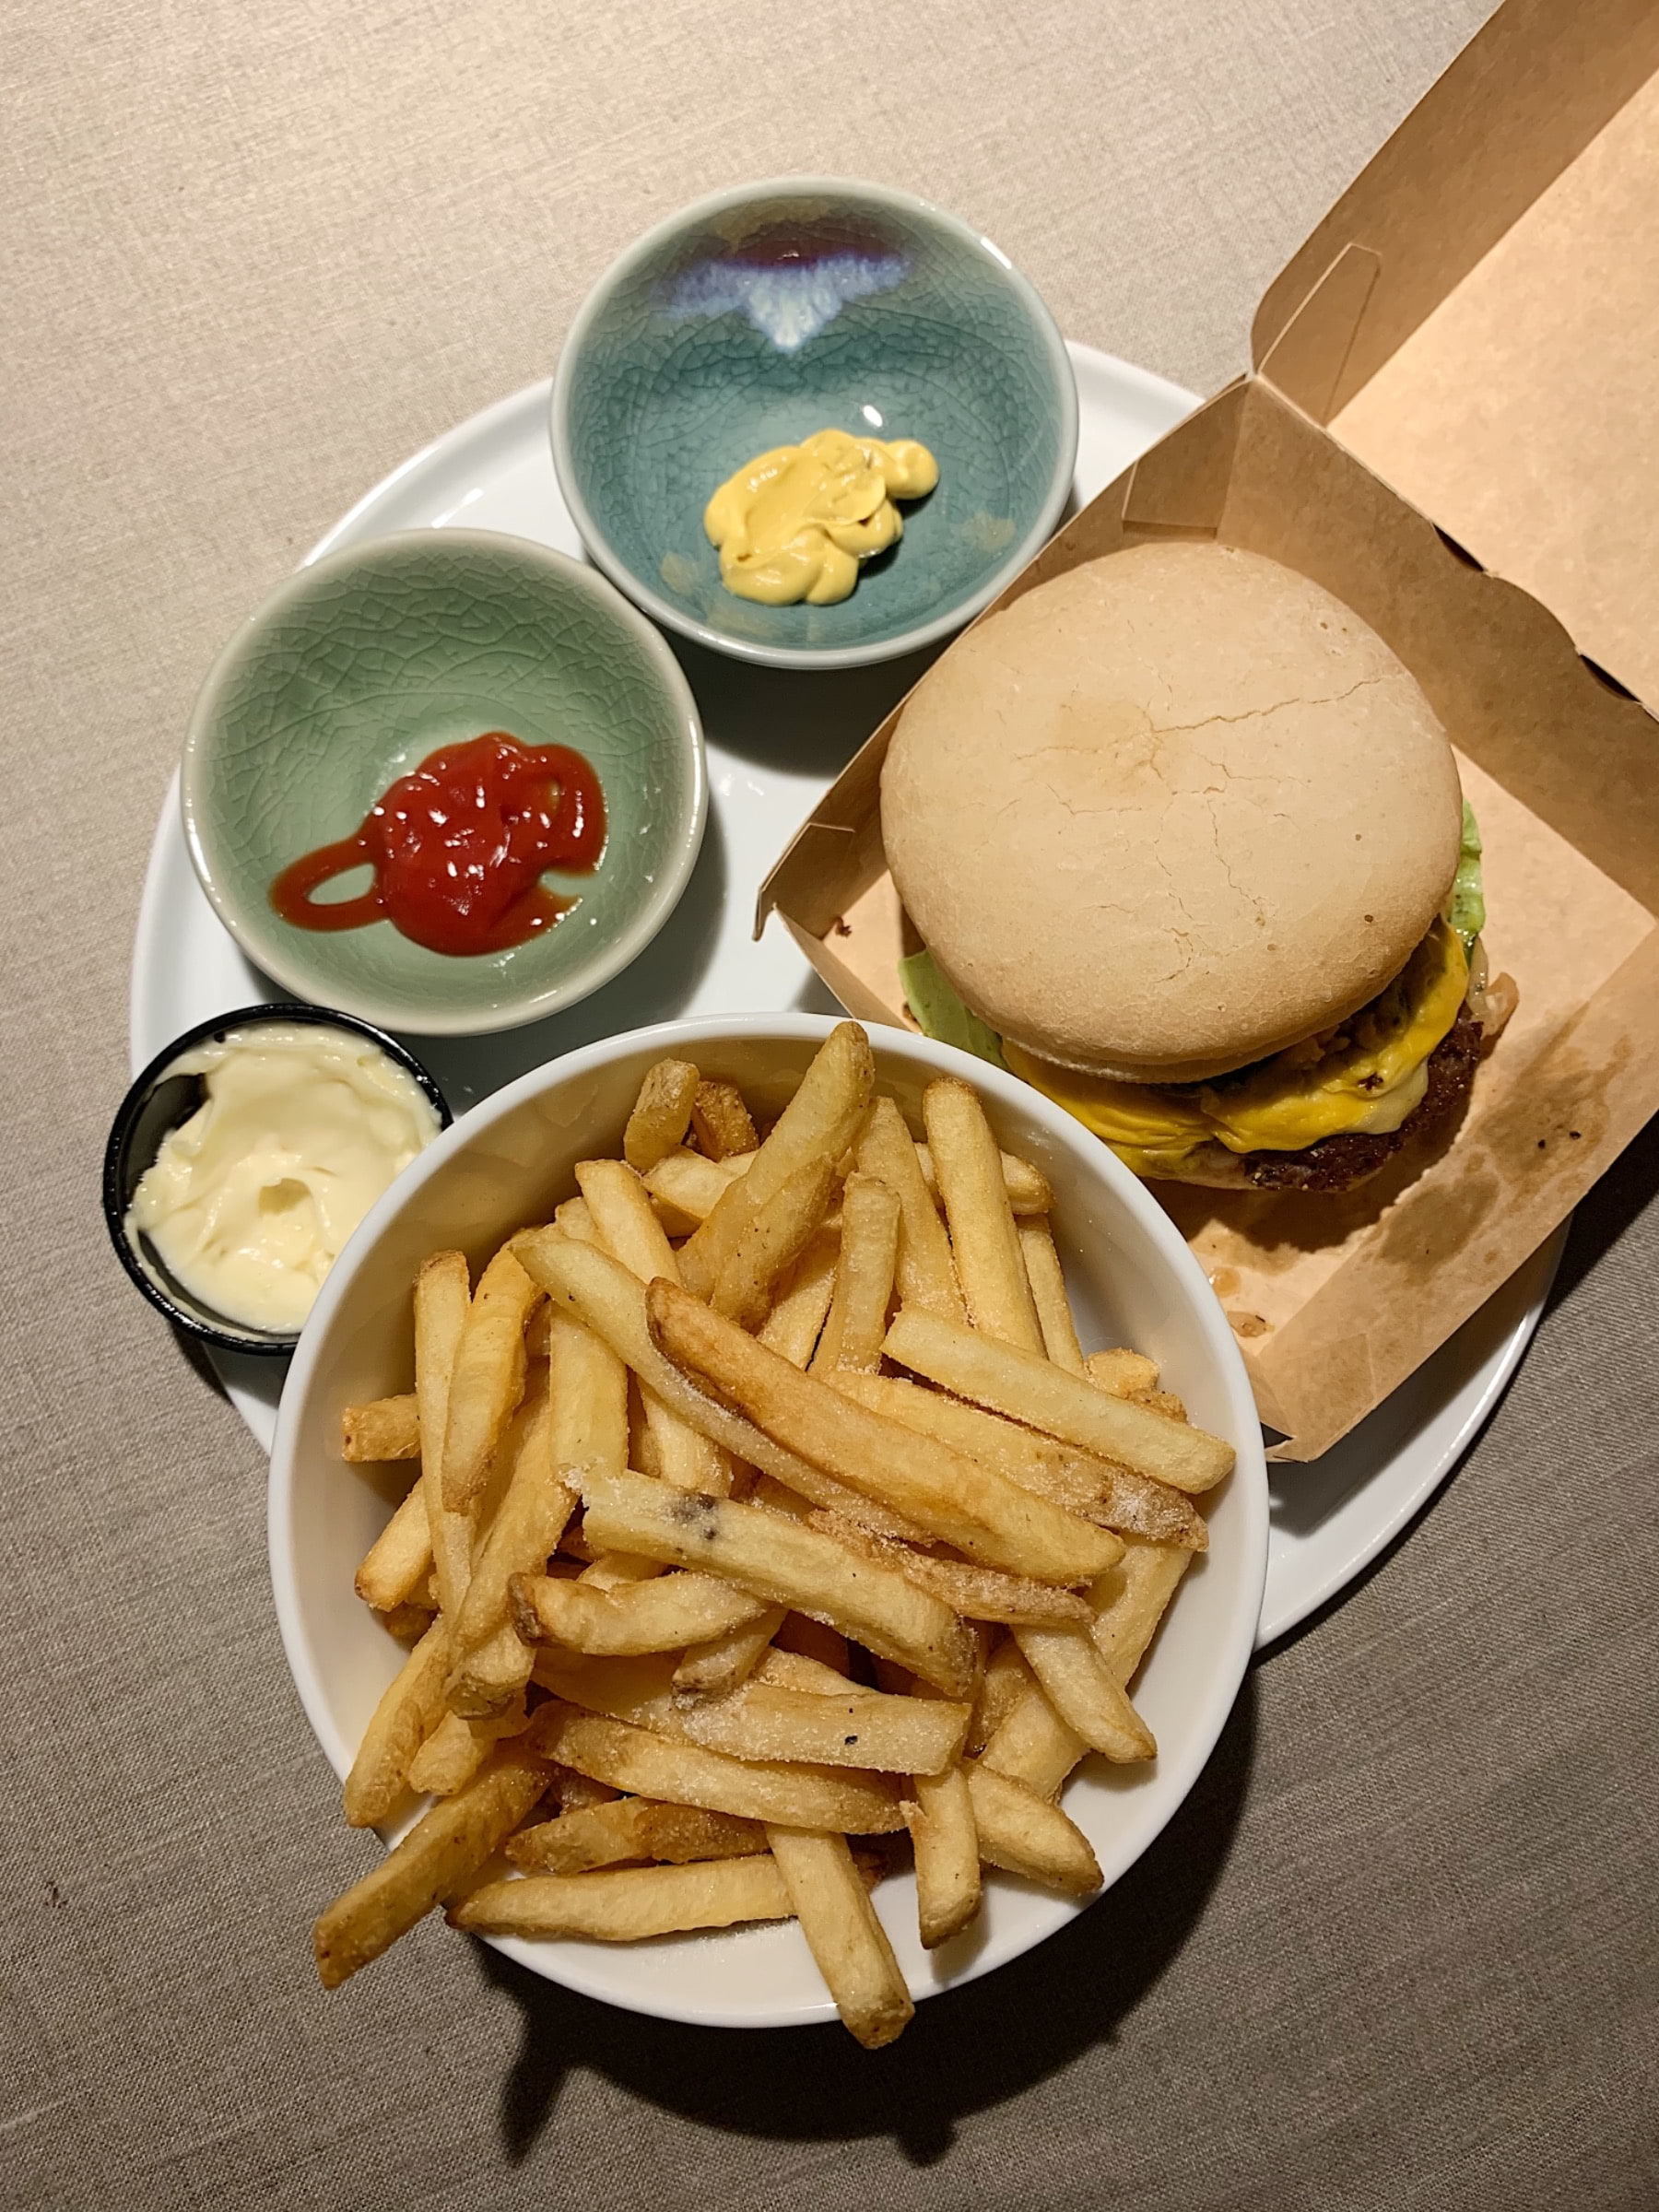 Hot Chili Jalapeno Cheeseburger med Original Fries och Majjo – Photo from Burgers & Beer Rörstrandsgatan by Caroline S. (09/02/2021)